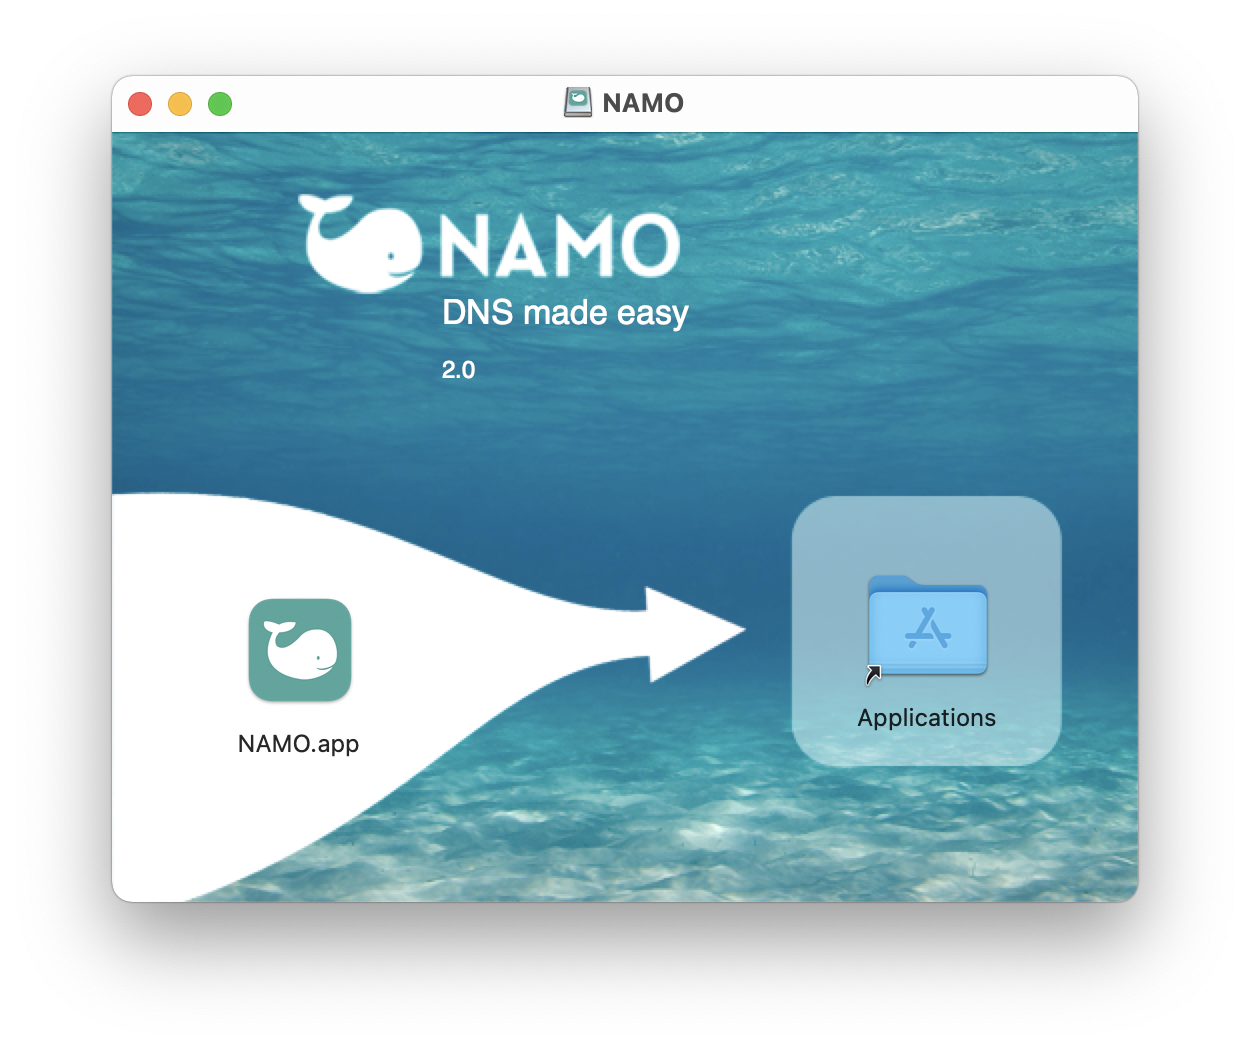 NAMO - Installation - Applications folder